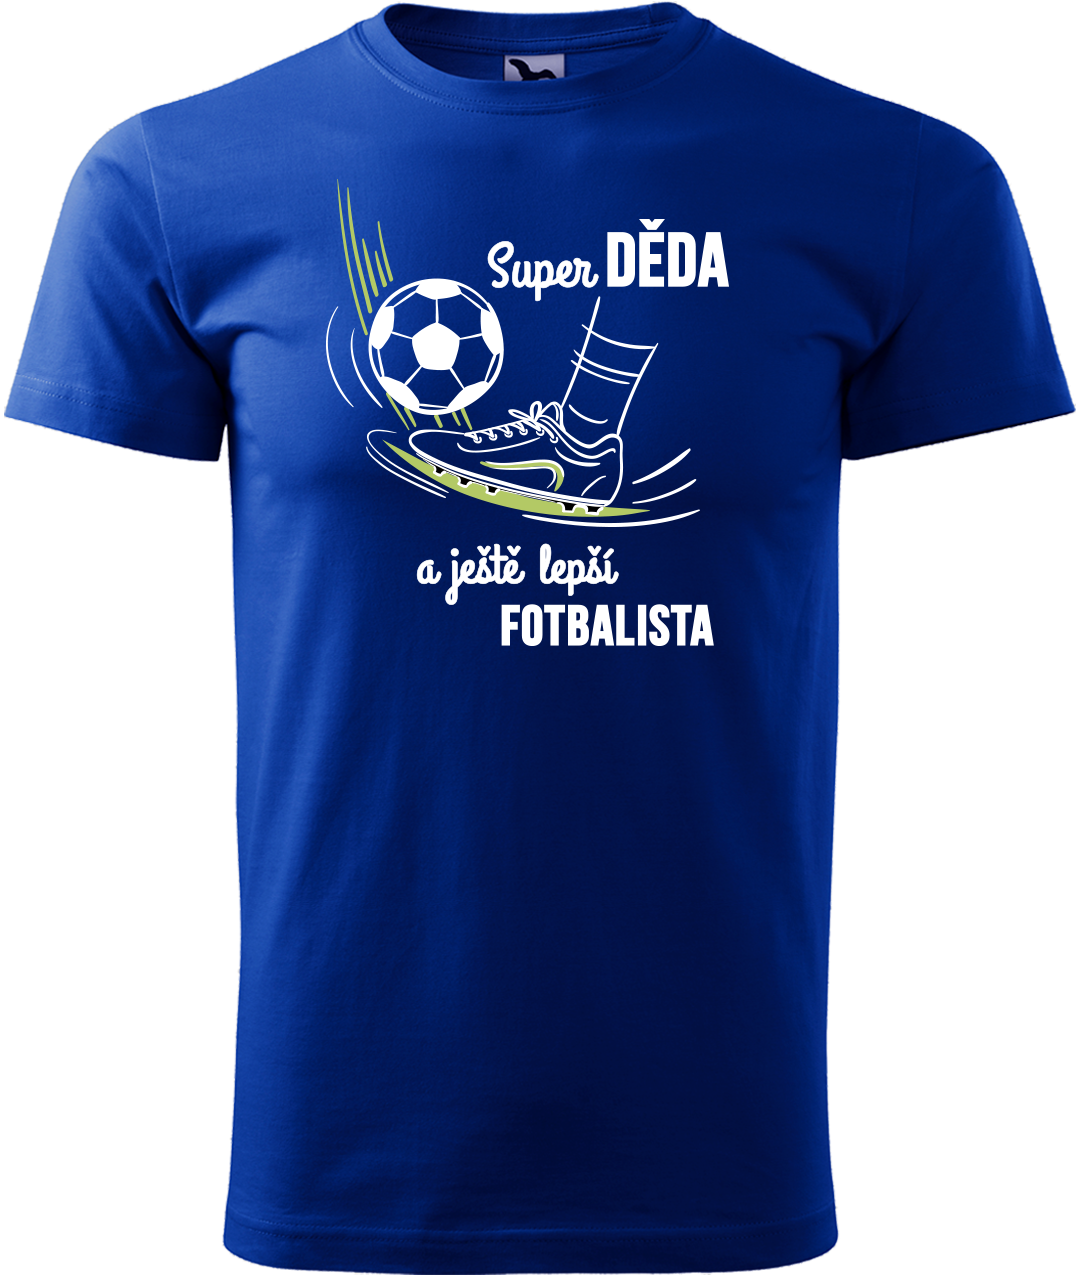 Tričko pro fotbalistu - Super děda a ještě lepší fotbalista Velikost: XL, Barva: Královská modrá (05)